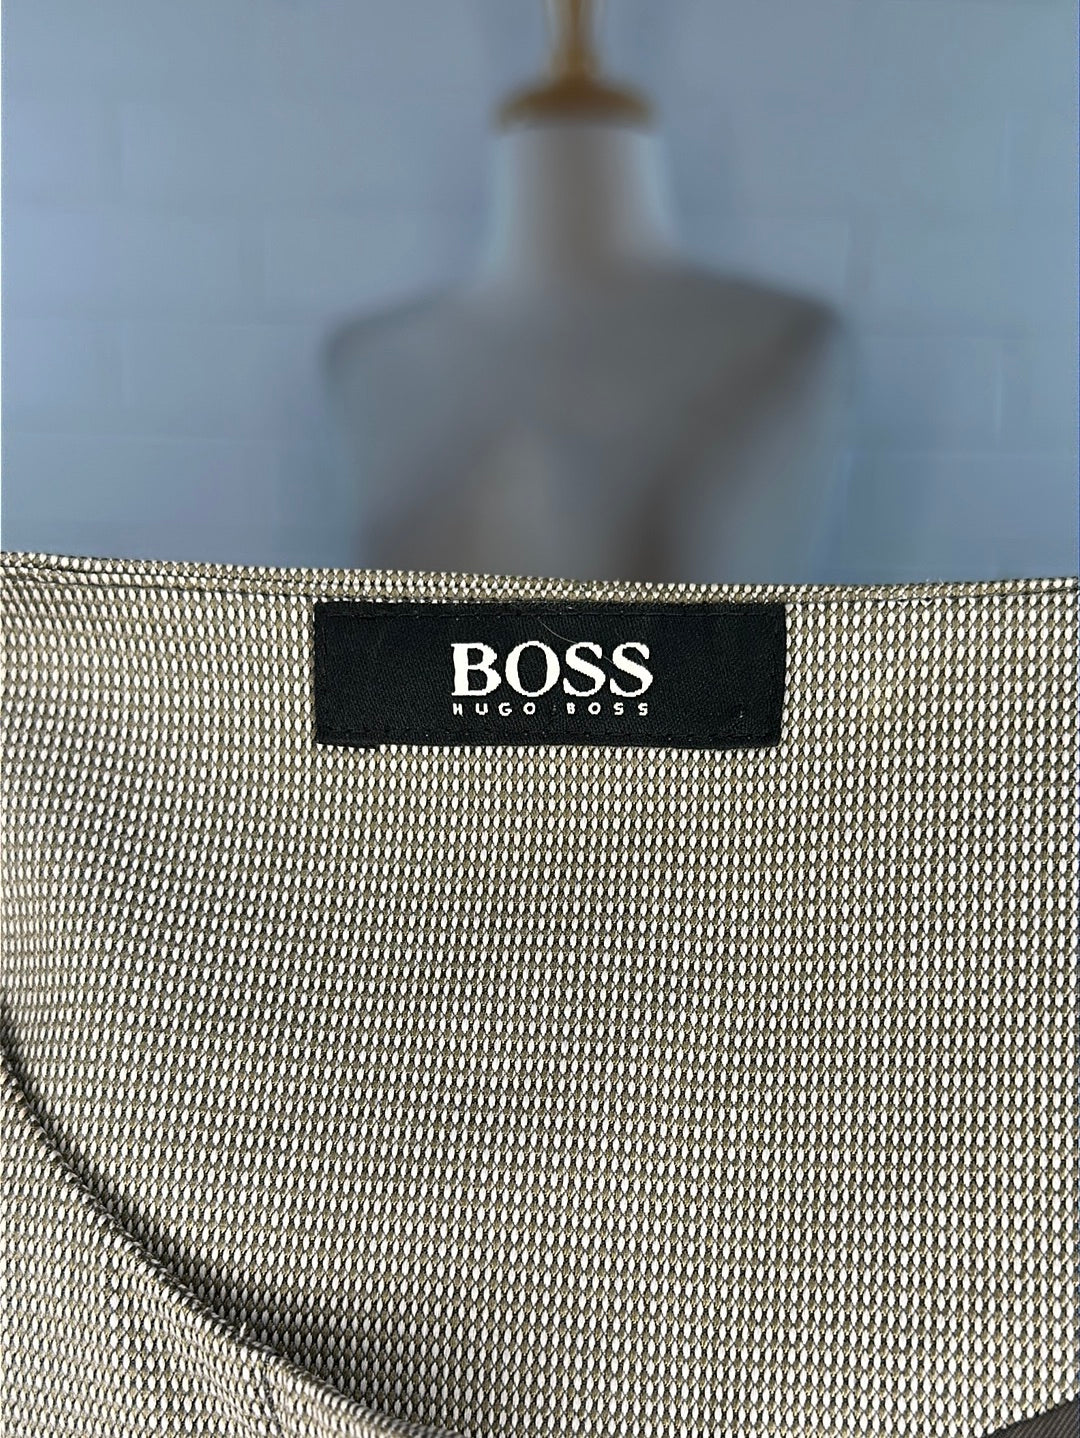 Hugo Boss | jacket | size 16 | single breasted